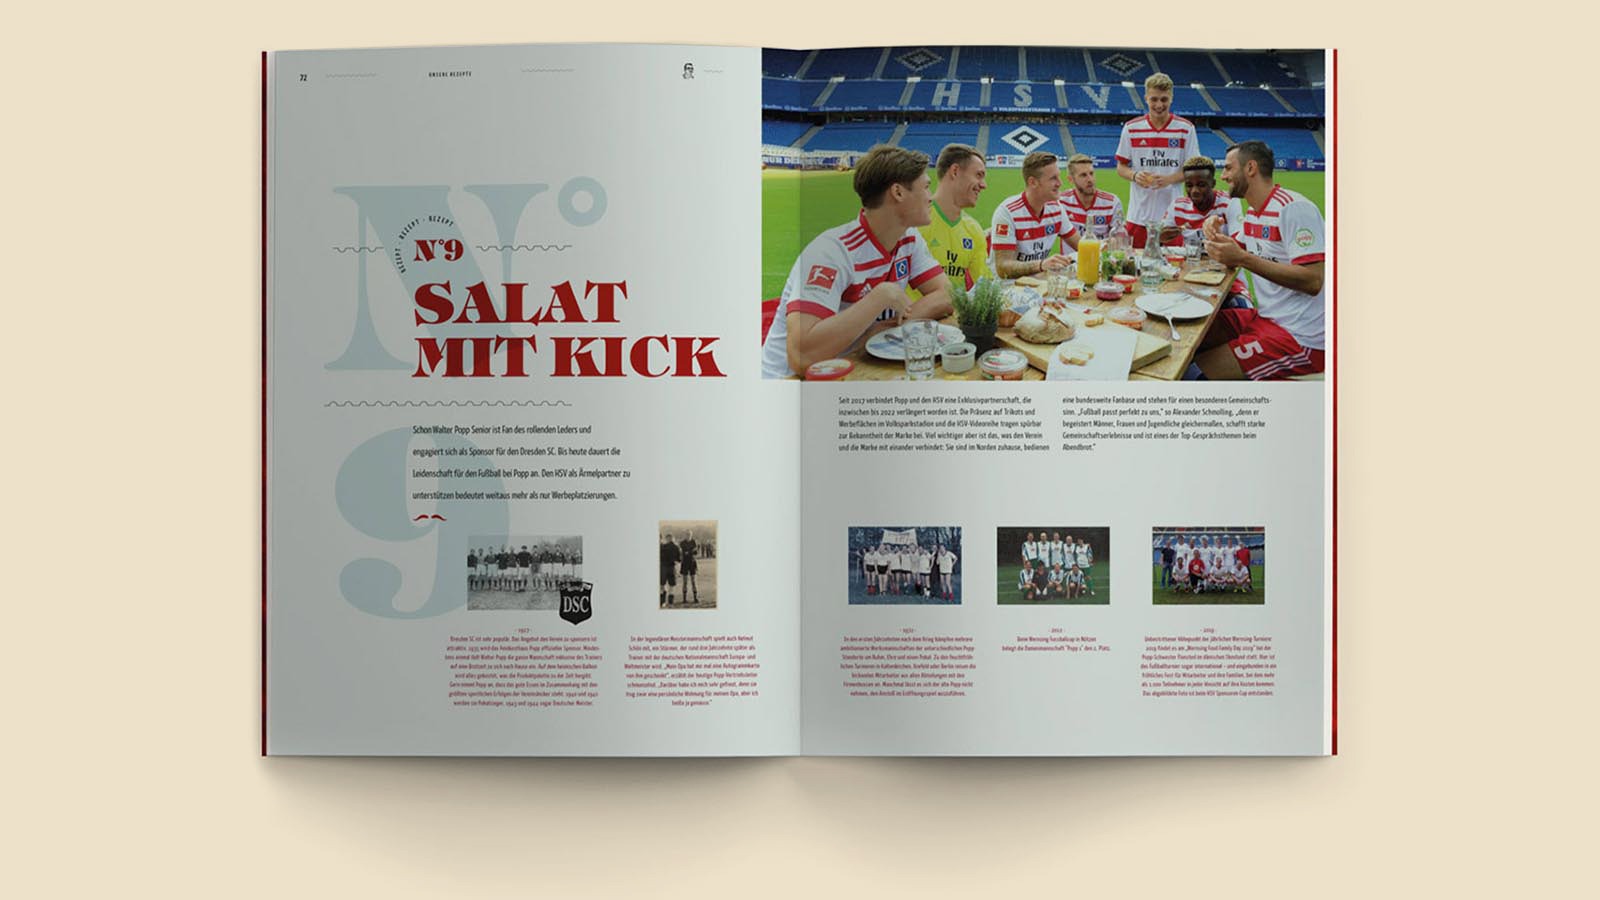 Doppelte Innenseite mit Textinhalten und der Überschrift "Salat mit Kick" und Bildern von Fußballmannschaften.